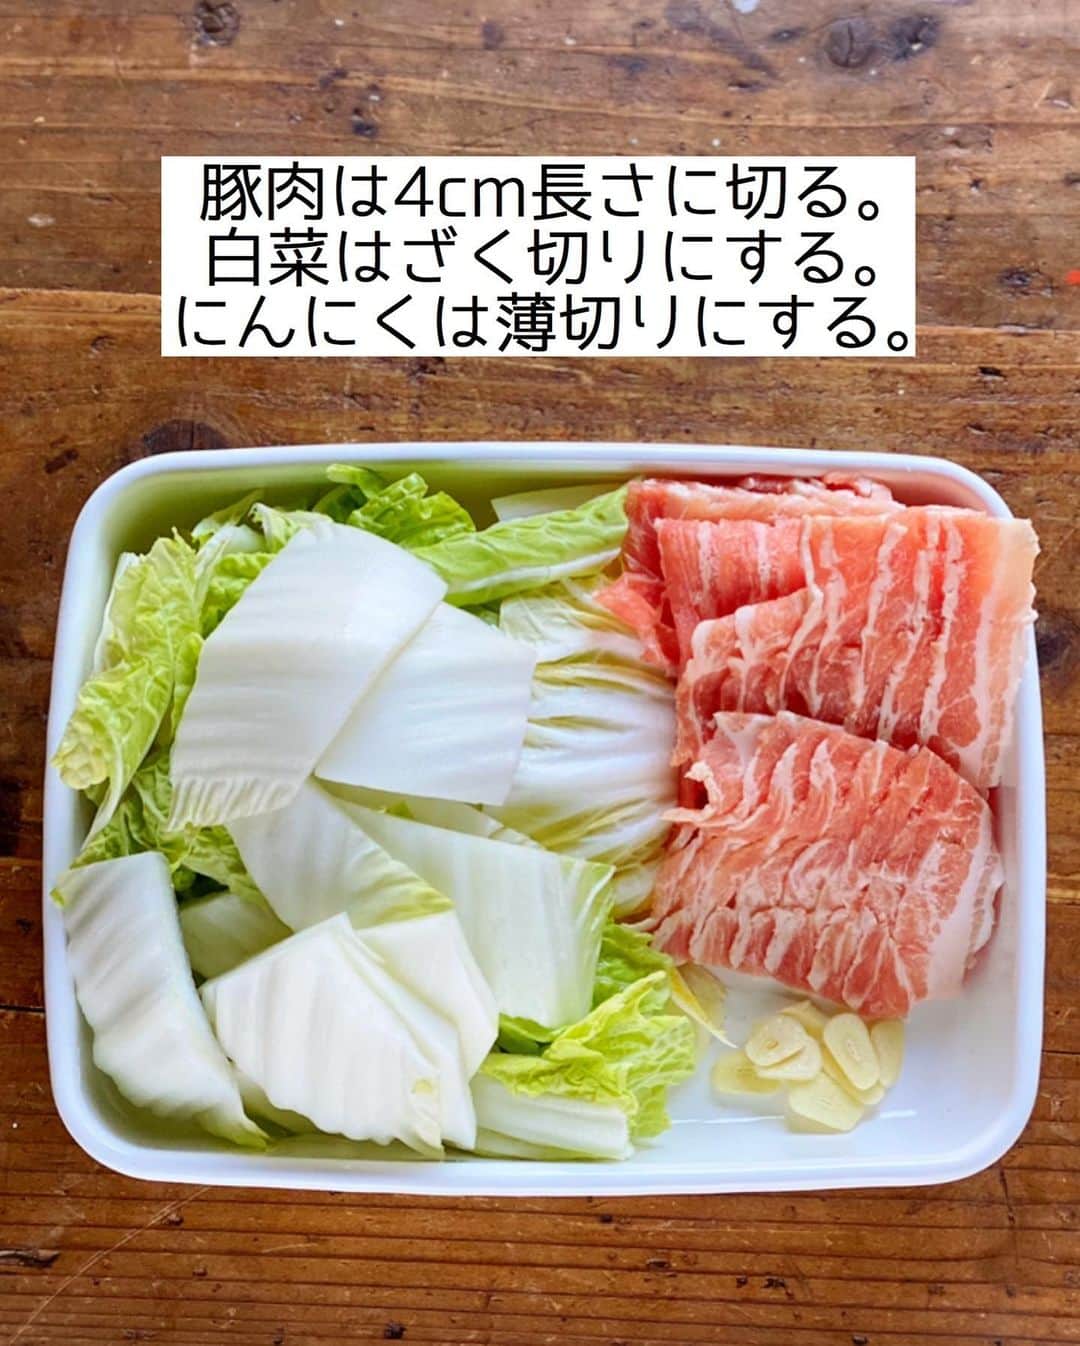 Mizuki【料理ブロガー・簡単レシピ】さんのインスタグラム写真 - (Mizuki【料理ブロガー・簡単レシピ】Instagram)「・﻿ 【#レシピ 】ーーーーーーーーーー﻿ ♡豚肉と白菜のほったらかし煮♡﻿ ーーーーーーーーーーーーーーーー﻿ ﻿ 　﻿ ﻿ おはようございます(*^^*)﻿ ﻿ 今日ご紹介させていただくのは﻿ \ 豚肉と白菜のほったらかし煮 /﻿ ﻿ 鍋に材料全部重ねて煮るだけの﻿ 超〜簡単レシピです(*´艸`)﻿ ﻿ うま味たっぷりのスープまで﻿ 飲み干したくなる美味しさですよ♩﻿ 手間なくできるので﻿ お気軽にお試し下さいね(*^^*)﻿ ﻿ ﻿ ﻿ ＿＿＿＿＿＿＿＿＿＿＿＿＿＿＿＿＿＿＿＿﻿ 【2人分】﻿ 豚バラ薄切り肉...150g﻿ 白菜...1/4個(400g)﻿ にんにく...1かけ﻿ ●水...200ml﻿ ●みりん...大1﻿ ●鶏がらスープ・醤油...各小2﻿ ごま・万能ねぎ...各適量﻿ ﻿ 1.豚肉は4cm長さに切る。白菜はざく切りにする。にんにくは薄切りにする。﻿ 2.鍋に白菜と豚肉を交互に重ね入れ、にんにくをのせる。﻿ 3.●を加えて中火にかけ、煮立ったら蓋をして10分煮る。﻿ 仕上げにごまとねぎをトッピングする。 ￣￣￣￣￣￣￣￣￣￣￣￣￣￣￣￣￣￣￣￣﻿ ﻿ ﻿ ﻿ 《ポイント》﻿ ♦︎工程2では【白菜1/3量(芯の部分)→豚肉1/2量→白菜1/3量→豚肉1/2量→白菜1/3量→にんにく】という風に重ねています♩﻿ ♦︎直径20cmの鍋を使用しています♩﻿ ♦︎にんにくはチューブ(3cmくらい)でも♩﻿ ﻿ ﻿ ﻿ ﻿ ﻿ ﻿ ＿＿＿＿＿＿＿＿＿＿＿＿＿＿＿＿＿＿﻿ 🎁器プレゼントキャンペーン実施中🎁﻿ ￣￣￣￣￣￣￣￣￣￣￣￣￣￣￣￣￣￣﻿ おかげざで［今どき和食］が10刷増版となりました✨﻿ そこで心ばかりですが感謝の気持ちをお伝えしたく﻿ 《器プレゼントキャンペーンを実施中です♩》﻿ ▼ ▼ ▼﻿ ＿＿＿＿＿＿＿＿＿﻿ 【プレゼント内容】﻿ ￣￣￣￣￣￣￣￣￣﻿ 今人気の波佐見焼 大皿1枚﻿ もしくは小皿2枚セットを15名様に﻿ ＿＿＿＿＿＿＿＿＿﻿ 【応募方法】﻿ ￣￣￣￣￣￣￣￣￣﻿ ❶［Mizukiの今どき和食］から﻿ 1品ご自身で作った料理画像、﻿ もしくはカバー(表紙)画像を準備。﻿ ❷［#Mizukiの今どき和食器プレゼント ］﻿ のタグを付けて投稿！﻿ (以上で応募完了です😊　2/14〆切)﻿ _________________________________﻿ ﻿ 　﻿ ﻿ ﻿ ﻿ ﻿ ⭐️発売中⭐️﻿ ＿＿＿＿＿＿＿＿＿＿＿＿＿＿＿＿＿＿﻿ ホケミレシピの決定版♩﻿ \はじめてでも失敗しない/﻿ 📙#ホットケーキミックスのお菓子 📙﻿ ﻿ NHKまる得マガジンテキスト☆﻿ ホットケーキミックスで﻿ 📗絶品おやつ&意外なランチ📗﻿ ﻿ しんどくない献立、考えました♩﻿ \15分でいただきます/﻿ 📕#Mizukiの2品献立 📕﻿ ﻿ 和食をもっとカジュアルに♩﻿ \毎日のごはんがラクになる/﻿ 📘Mizukiの今どき和食 📘﻿ ﻿ 重版しました！﻿ ありがとうございます😭﻿ 📗ラクしておいしい！#1品晩ごはん 📗﻿ ﻿ 摂食障害から料理研究家になるまでを綴った﻿ はじめてのエッセイ本﻿ 📙#普通のおいしいをつくるひと 📙﻿ ￣￣￣￣￣￣￣￣￣￣￣￣￣￣￣￣￣￣￣﻿ ﻿ ﻿ ﻿ ﻿ ﻿ ＿＿＿＿＿＿＿＿＿＿＿＿＿＿＿＿＿＿﻿ レシピを作って下さった際や﻿ レシピ本についてのご投稿には﻿ タグ付け( @mizuki_31cafe )して﻿ お知らせいただけると嬉しいです😊💕﻿ ￣￣￣￣￣￣￣￣￣￣￣￣￣￣￣￣￣￣﻿ ﻿ ﻿ ﻿ ﻿ ﻿ #豚肉#白菜#重ね煮#ほったらかし煮#Mizuki#簡単レシピ#時短レシピ#節約レシピ#料理#フーディーテーブル#マカロニメイト#おうちごはん#デリスタグラマー#料理好きな人と繋がりたい#おうちごはんlover#写真好きな人と繋がりたい#foodpic#cooking#recipe#lin_stagrammer#foodporn#yummy#f52grams#豚肉と白菜のほったらかし煮m」2月9日 7時01分 - mizuki_31cafe